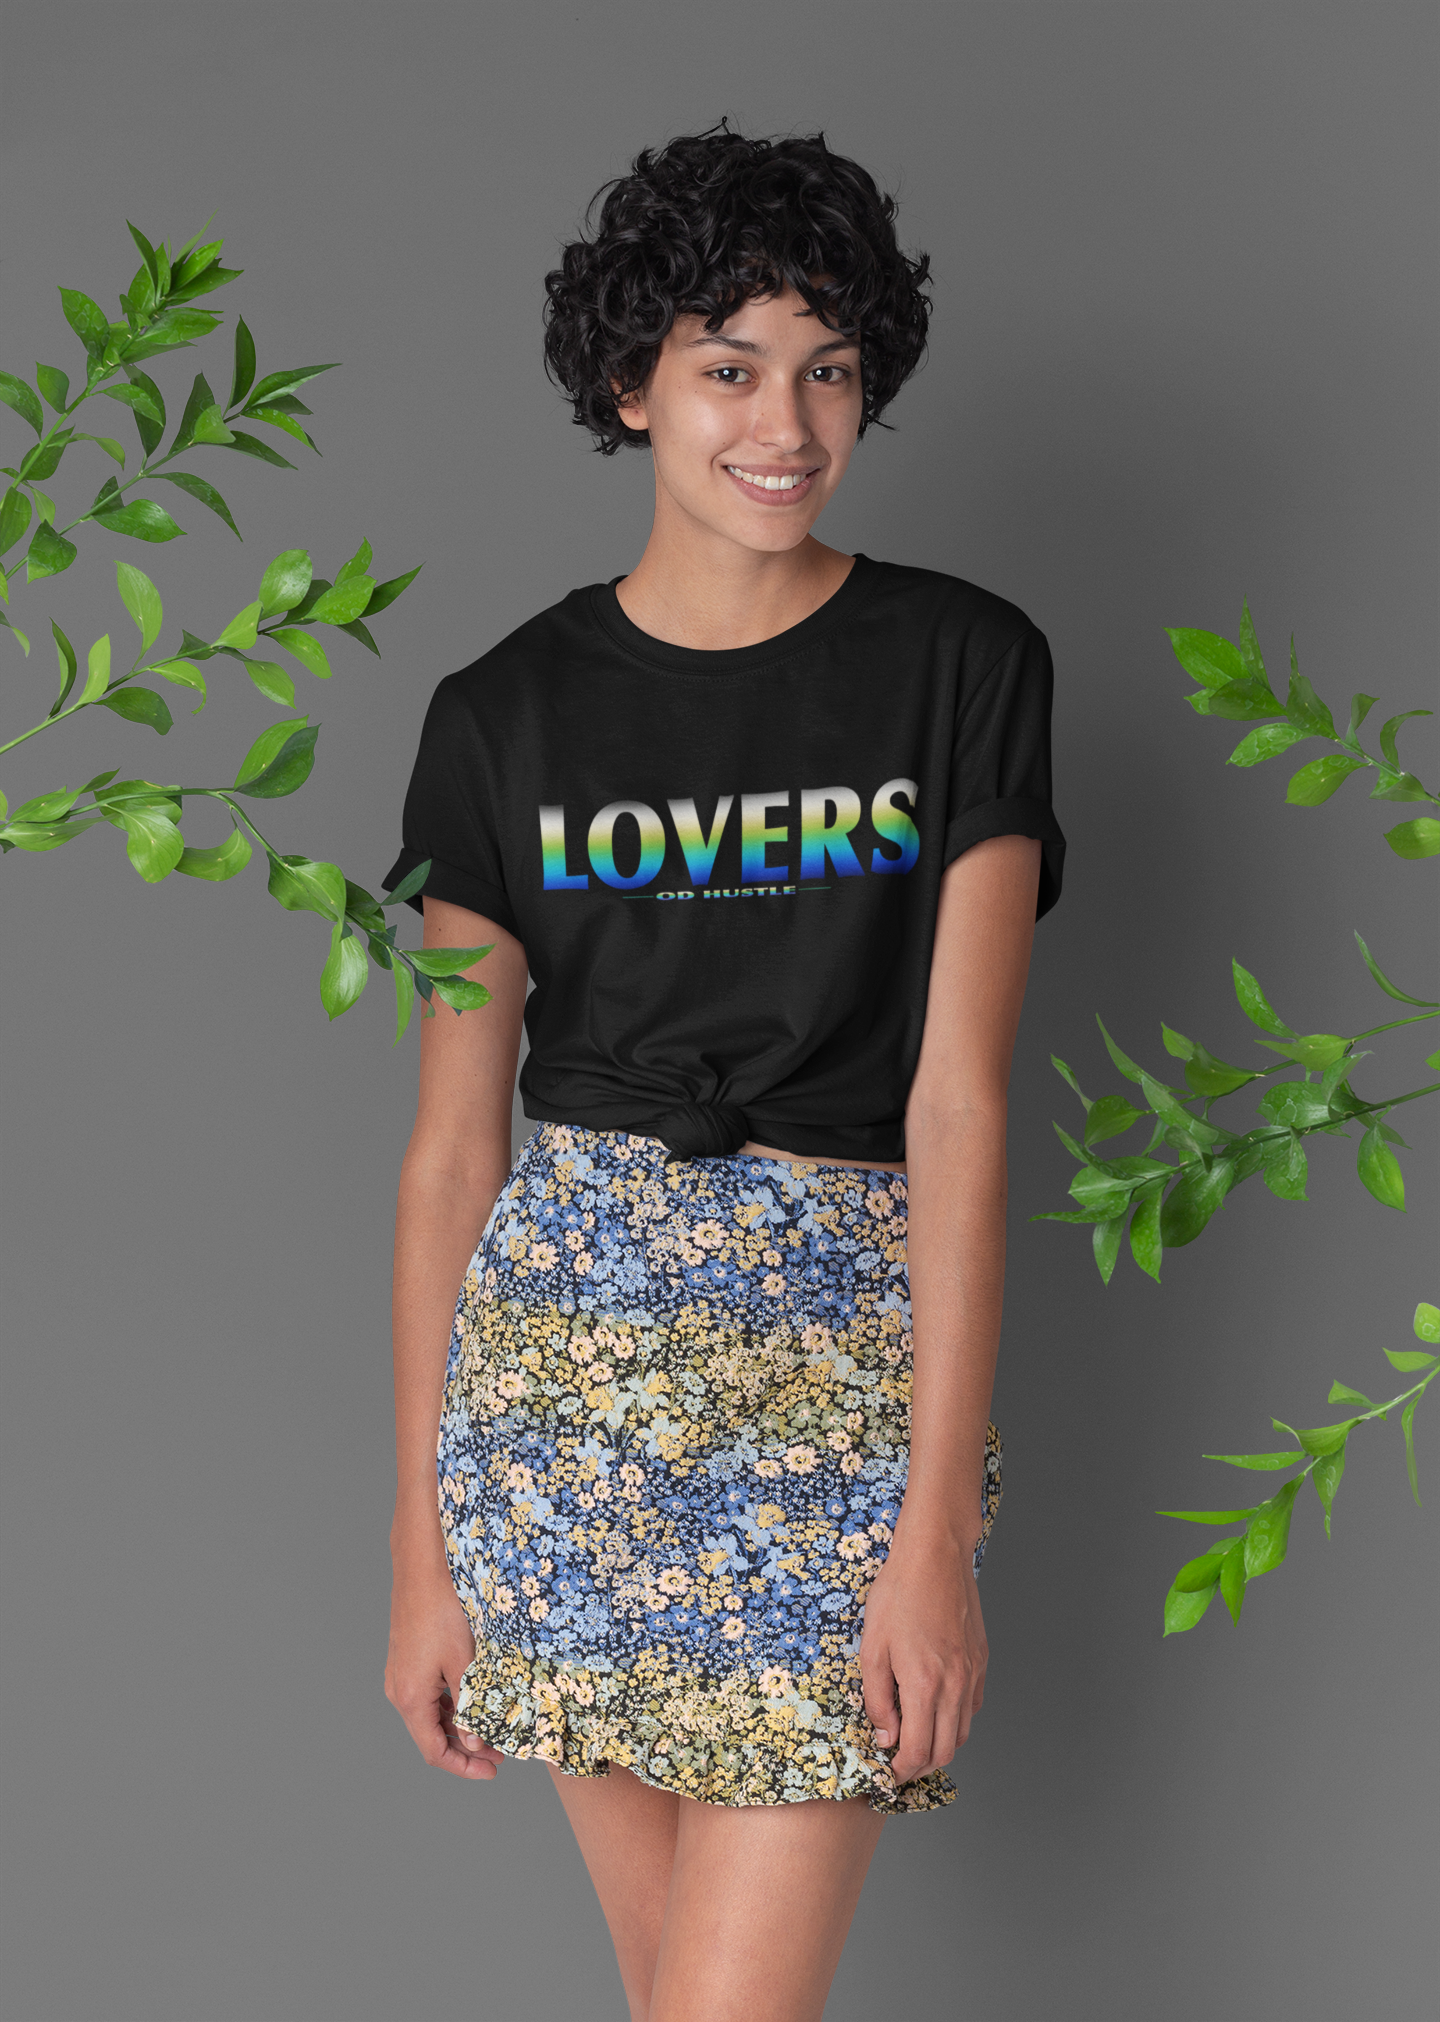 LOVERS! Short Sleeve T Shirt womens